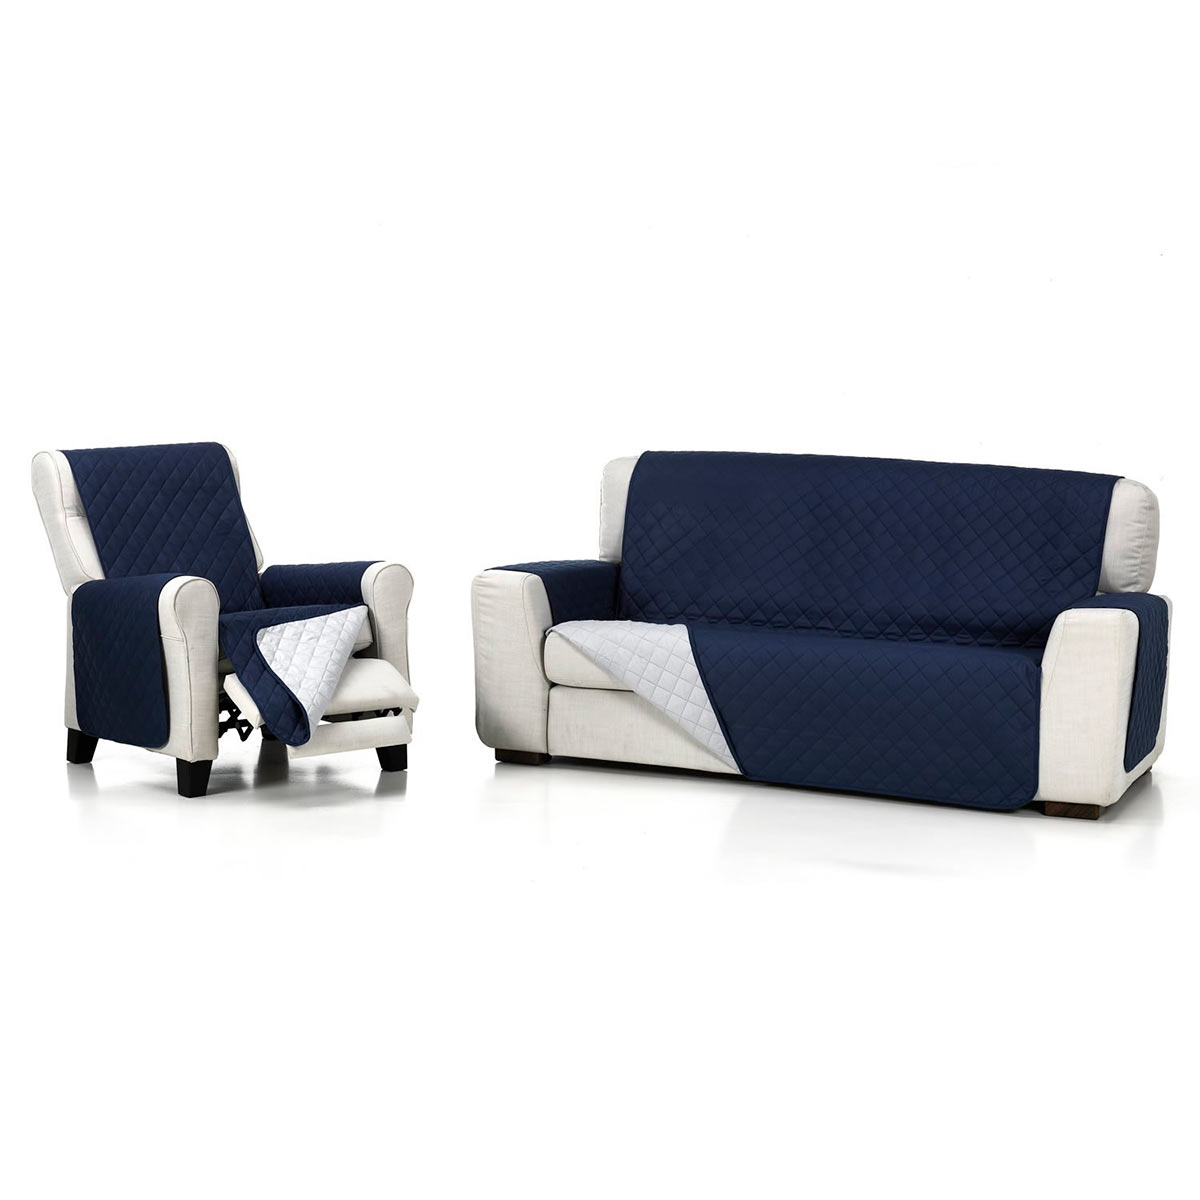 Cubre sofa Azul marino sillon fondo blanco